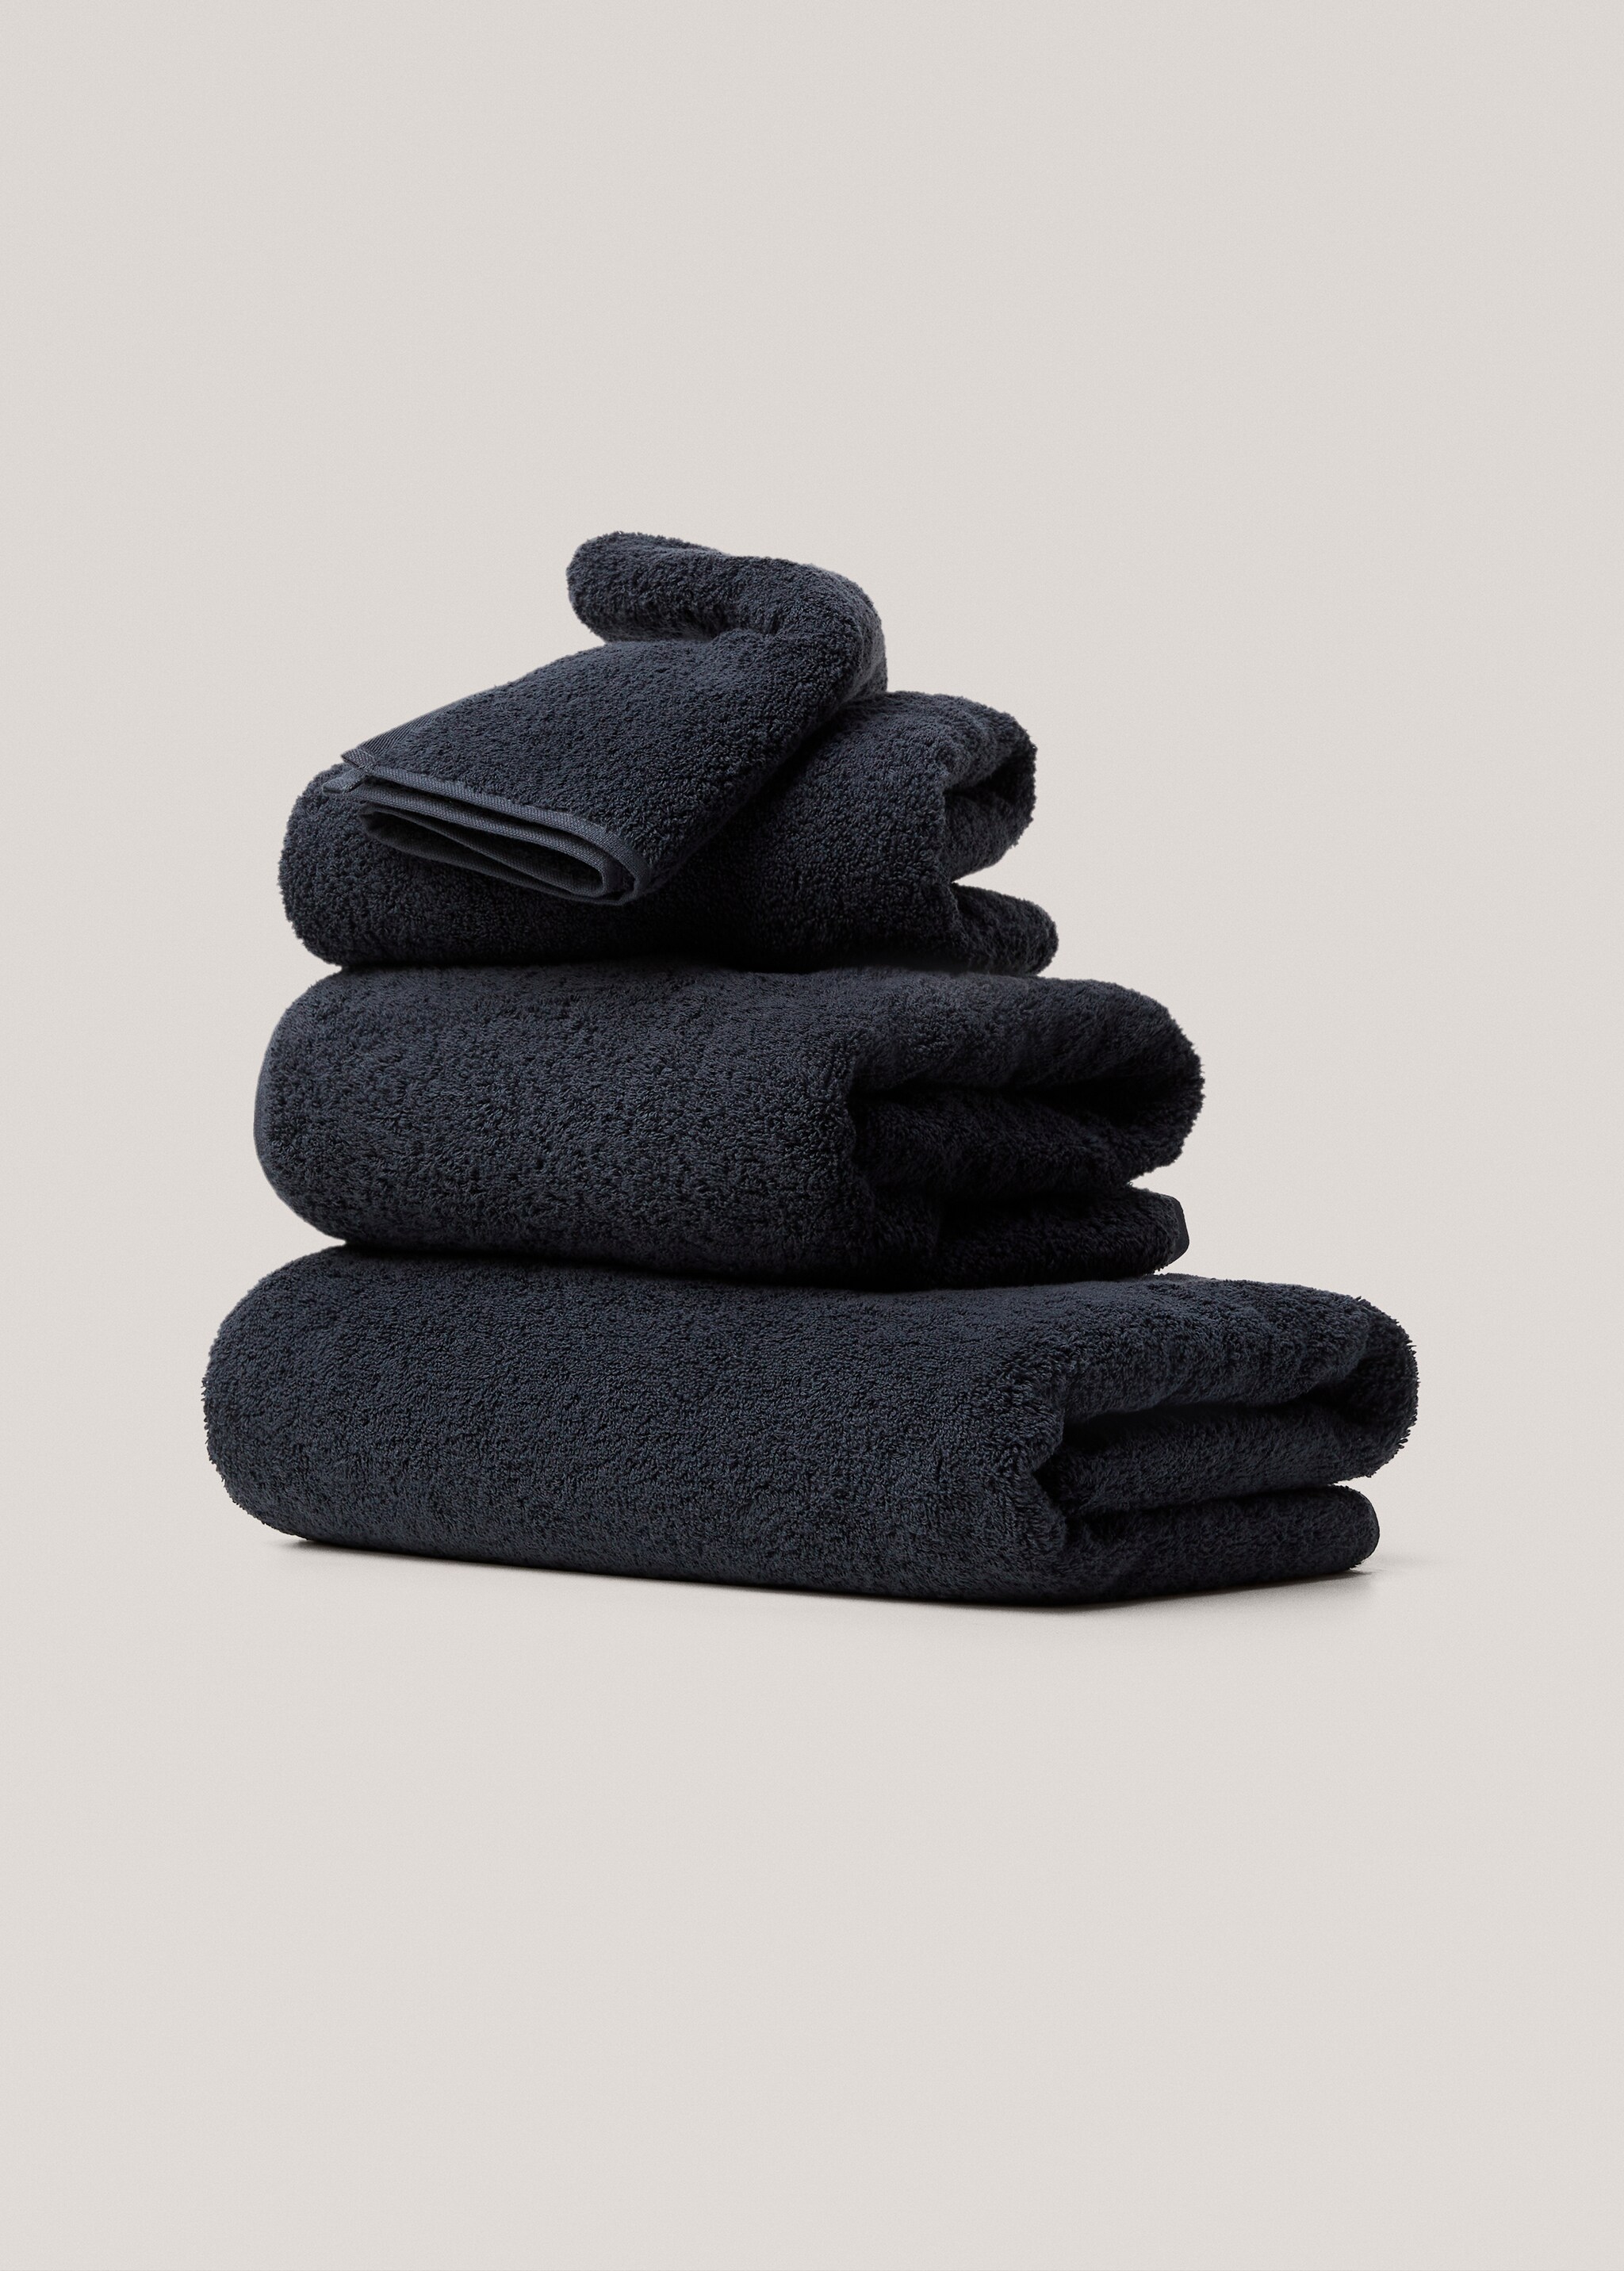 Asciugamano bagno cotone 600 gr/m2 70x140 cm - Articolo senza modello